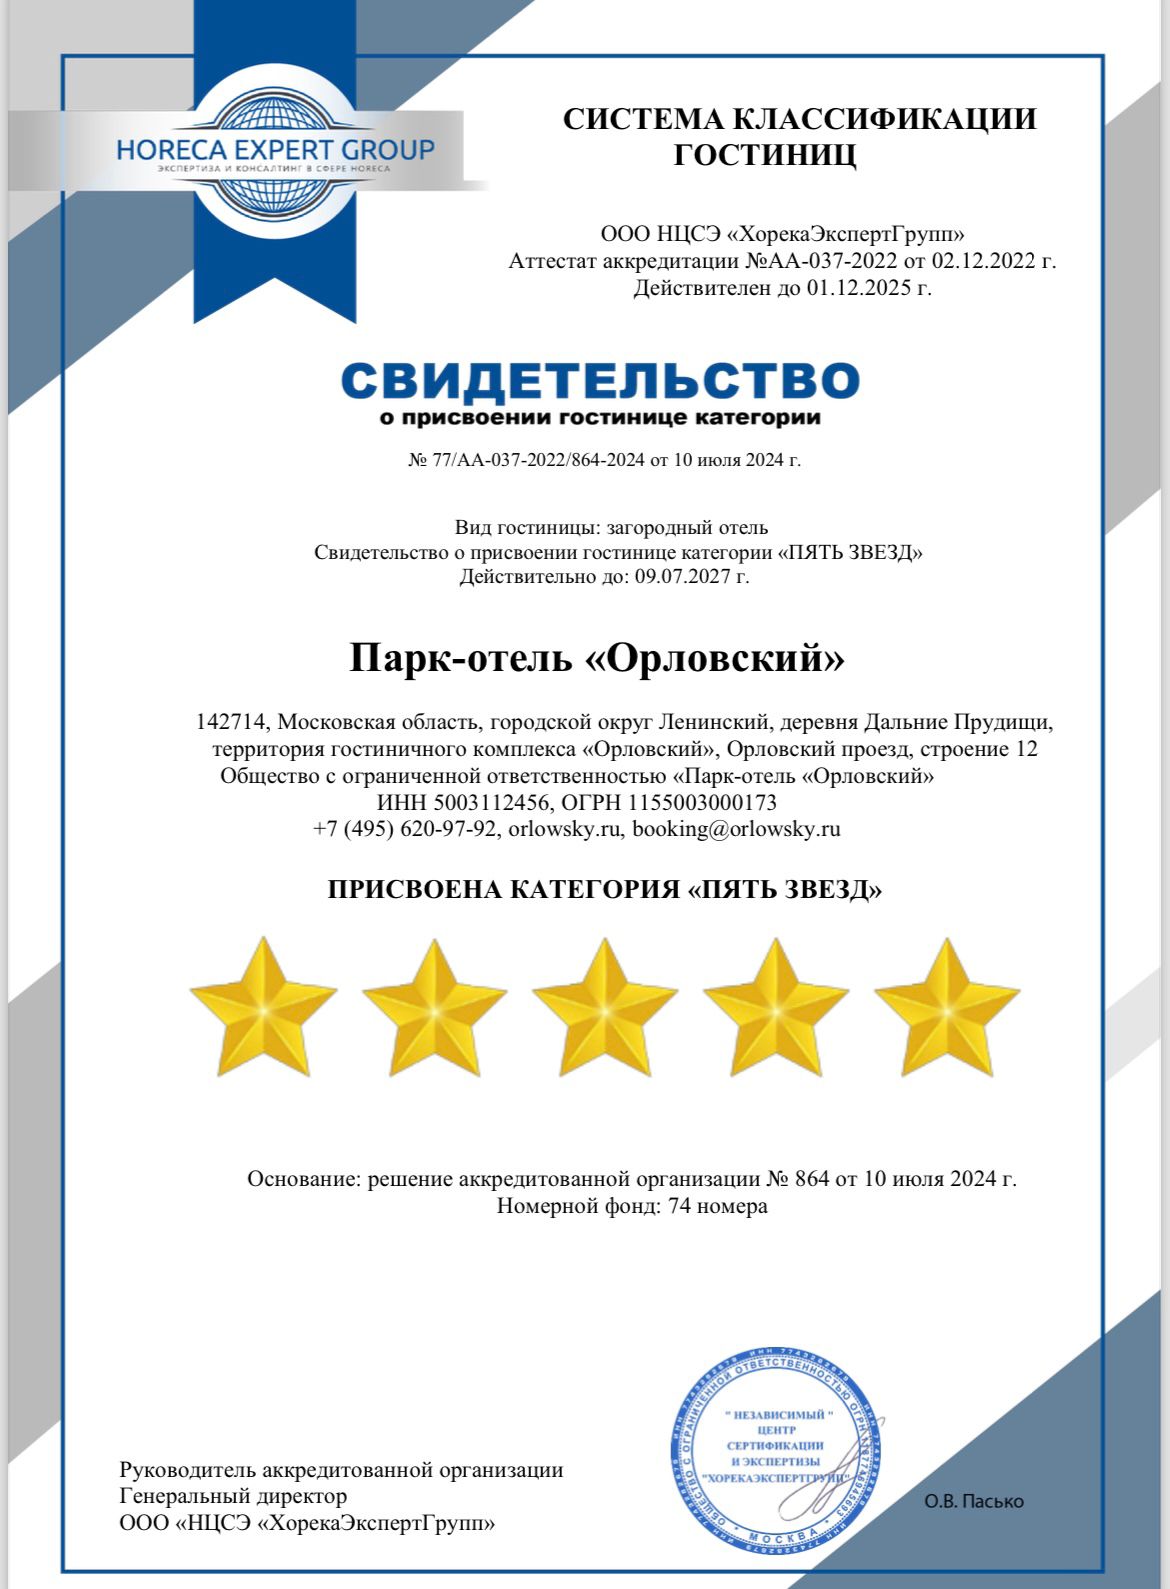 Парк – отель Орловский успешно прошел сертификацию на пять звёзд ⭐️⭐️⭐️⭐️🌟